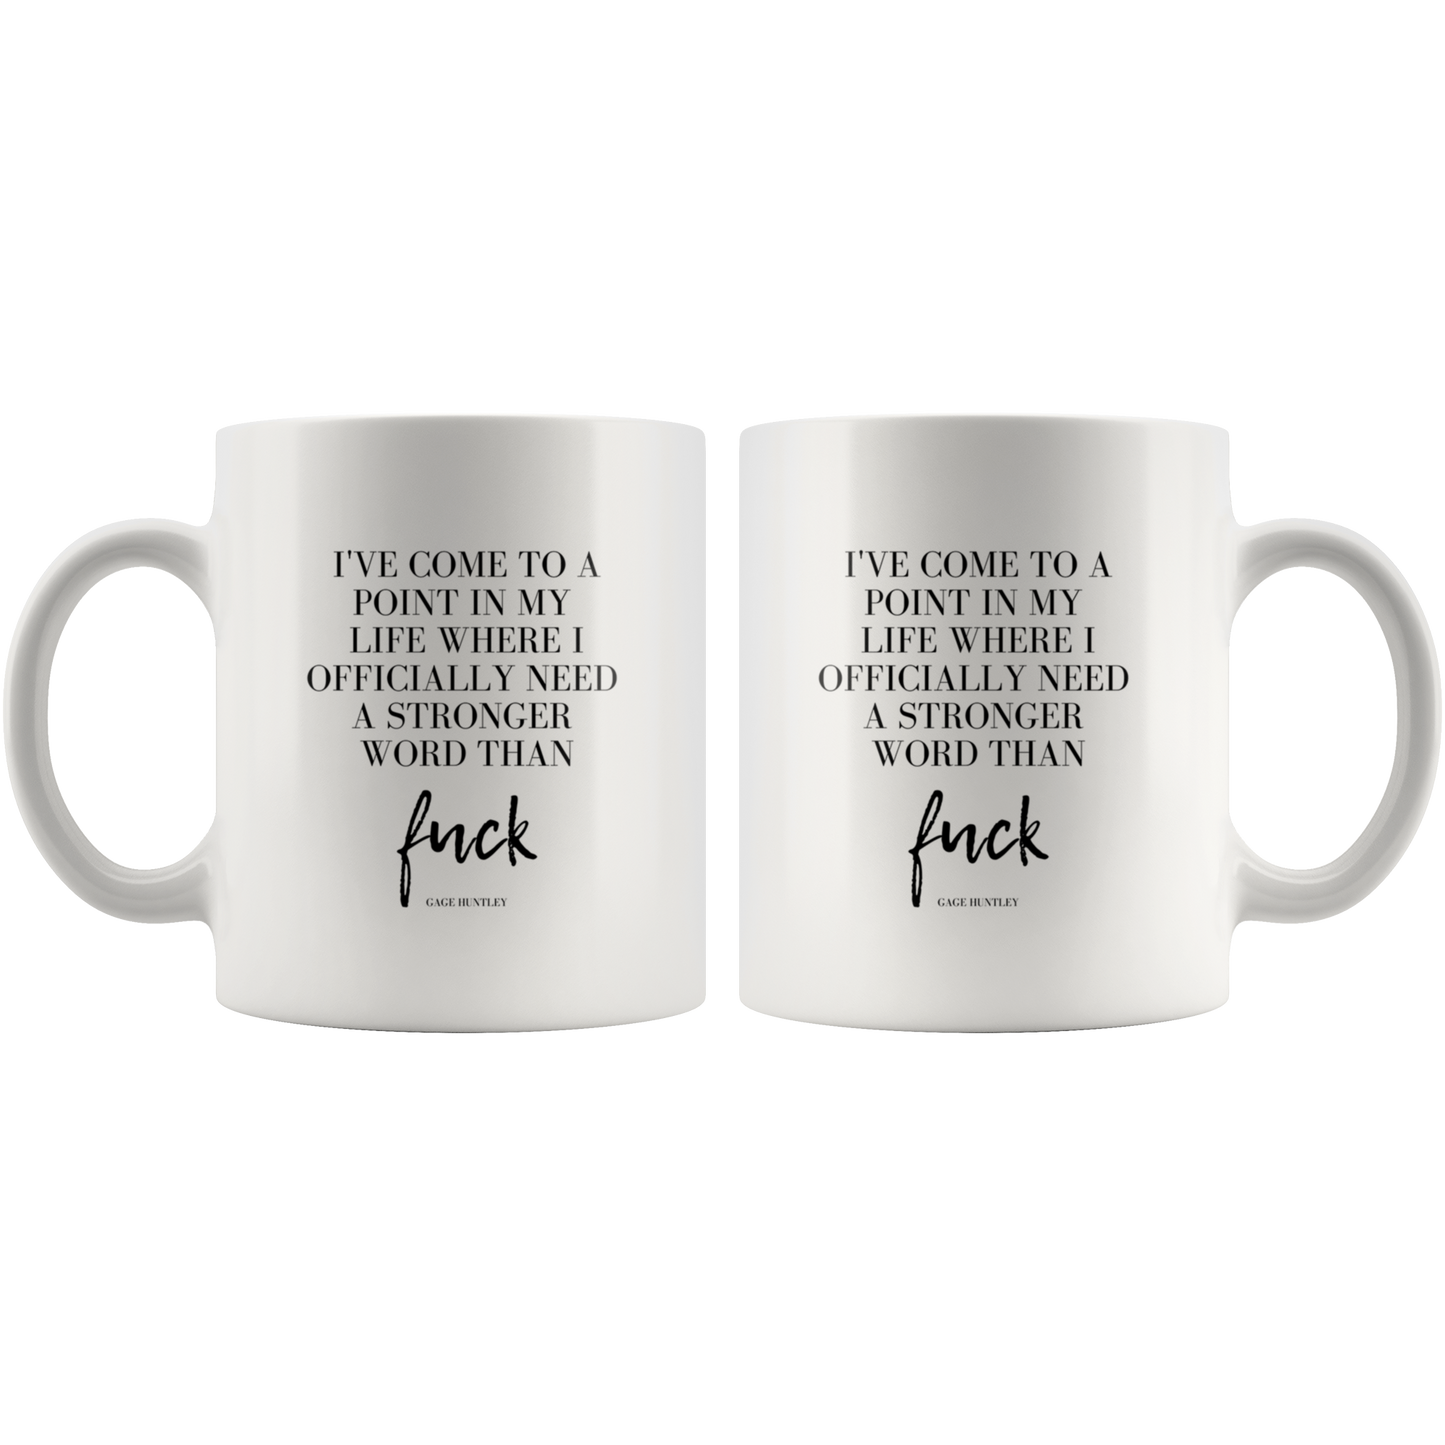 Stronger Word- Coffee Mug